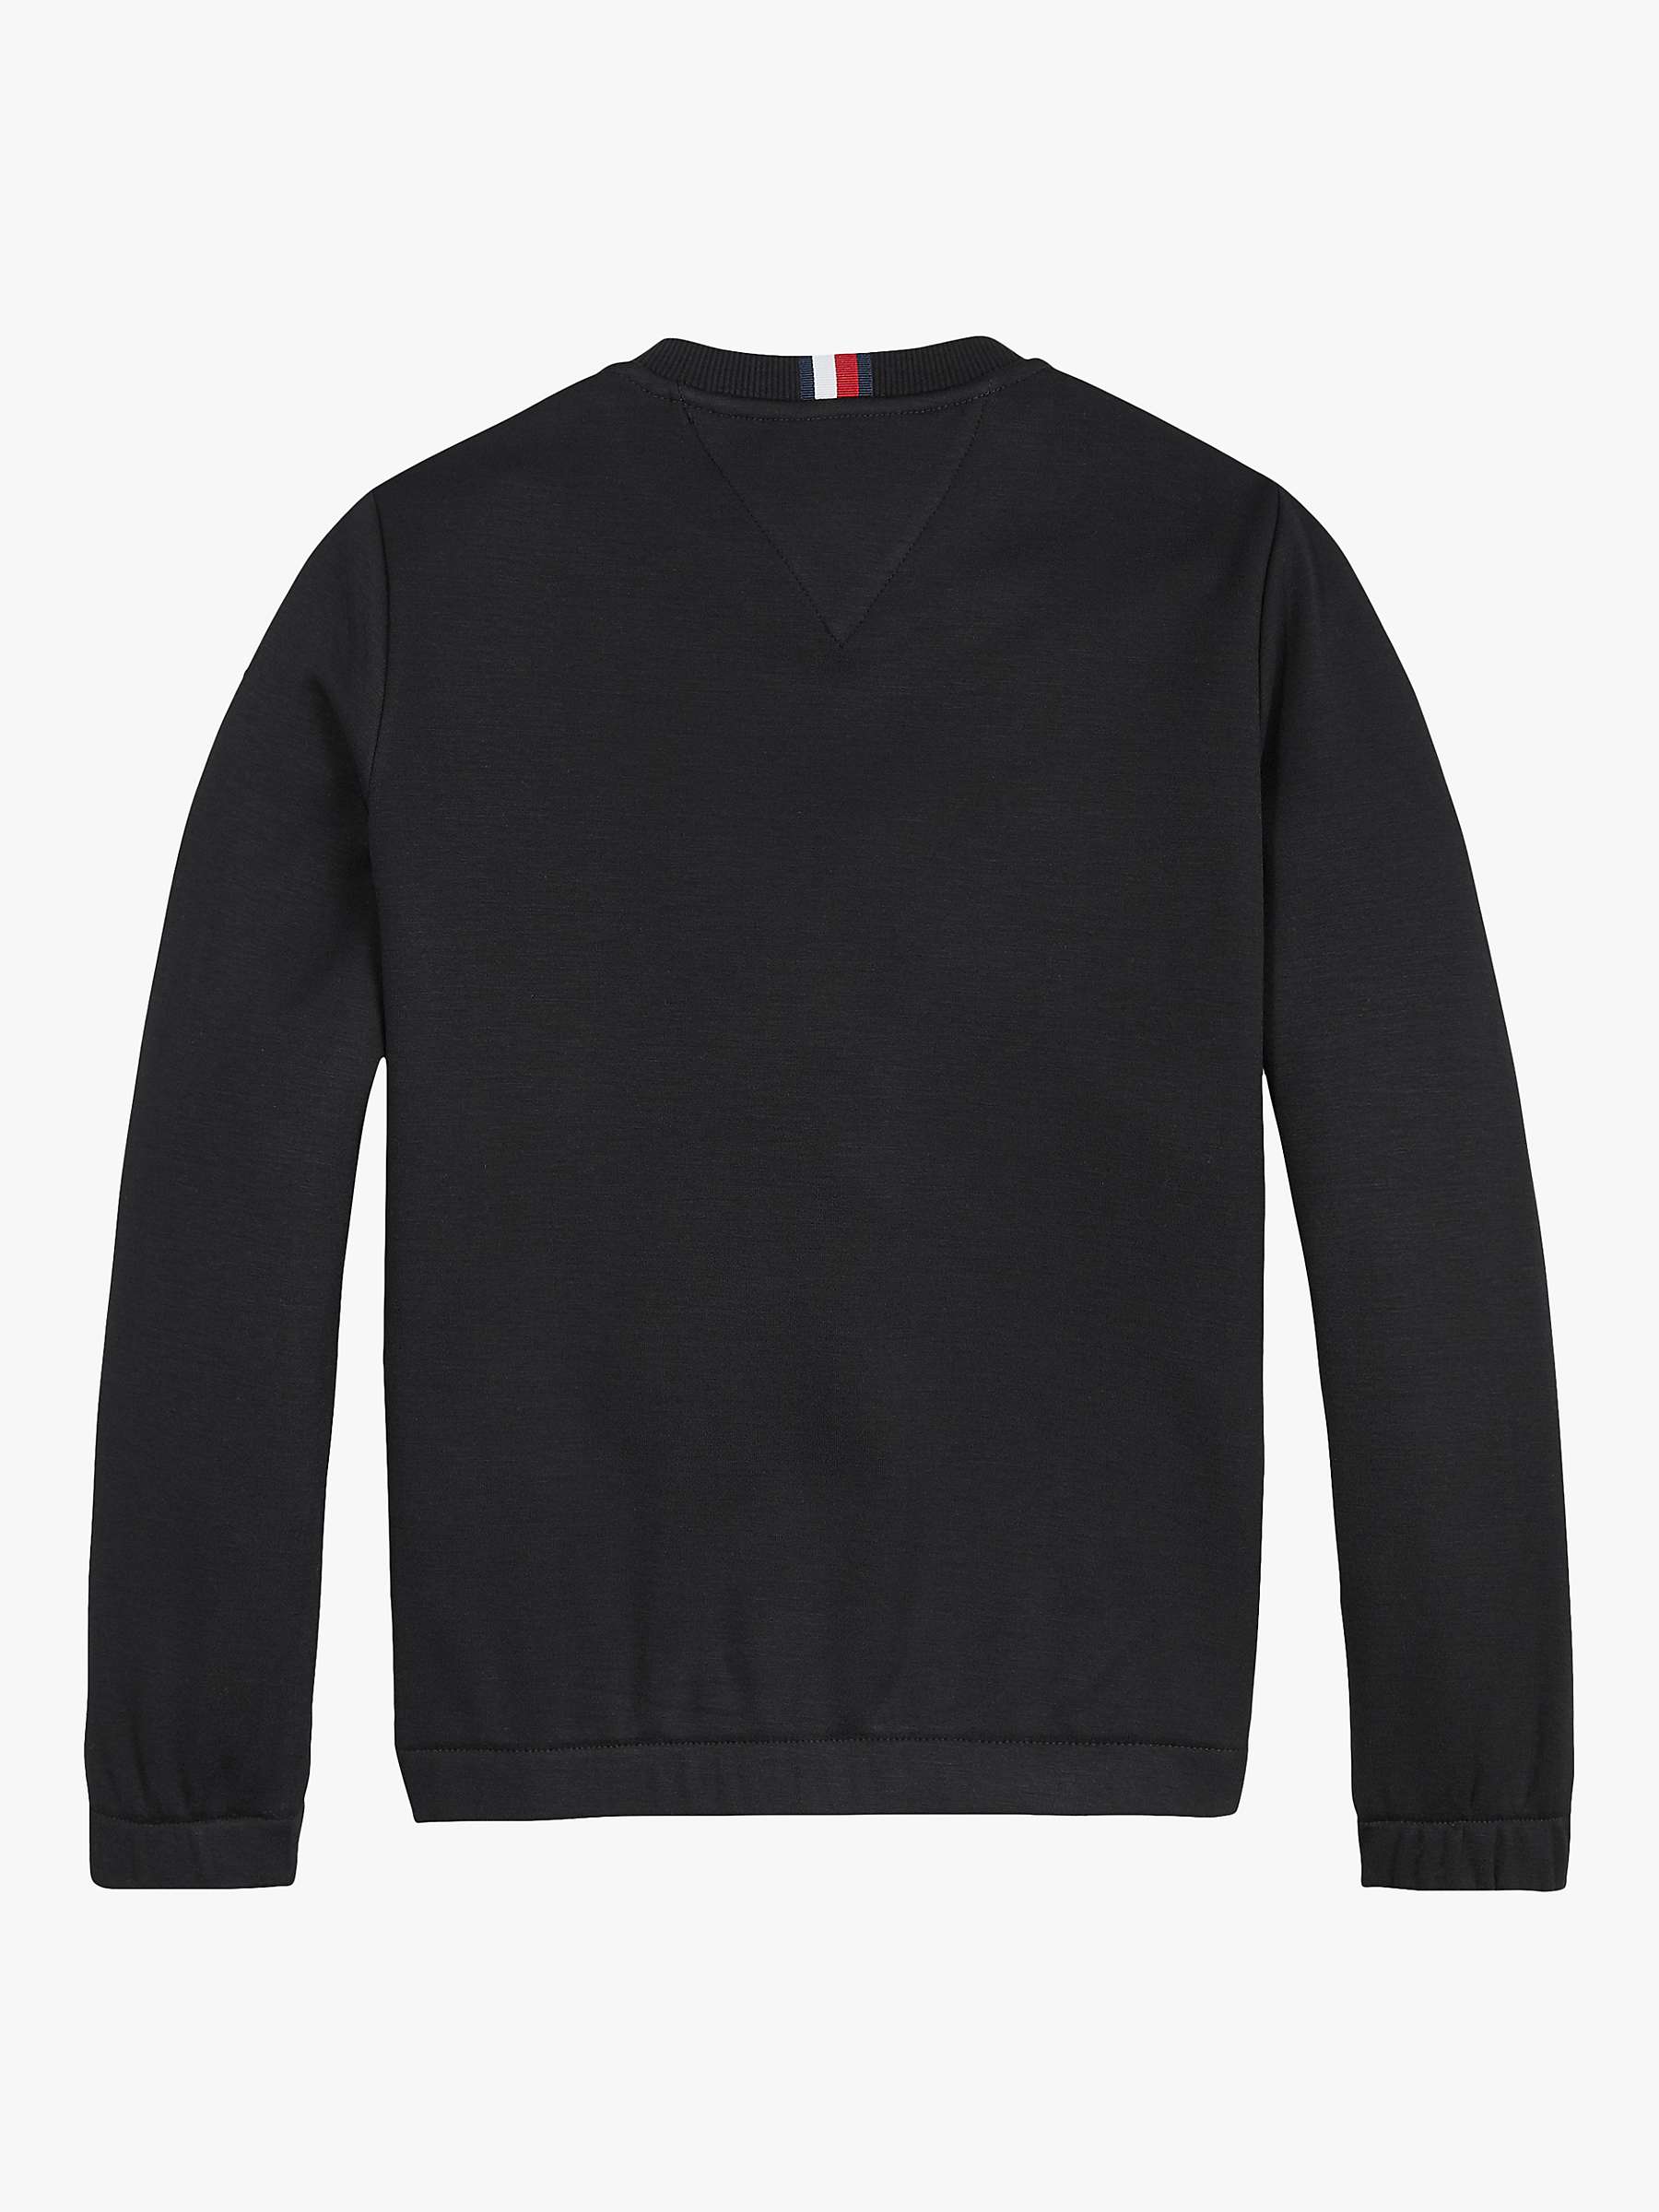 Buy Tommy Hilfiger Kids' Contrast Panel Fleece Sweatshirt Online at johnlewis.com